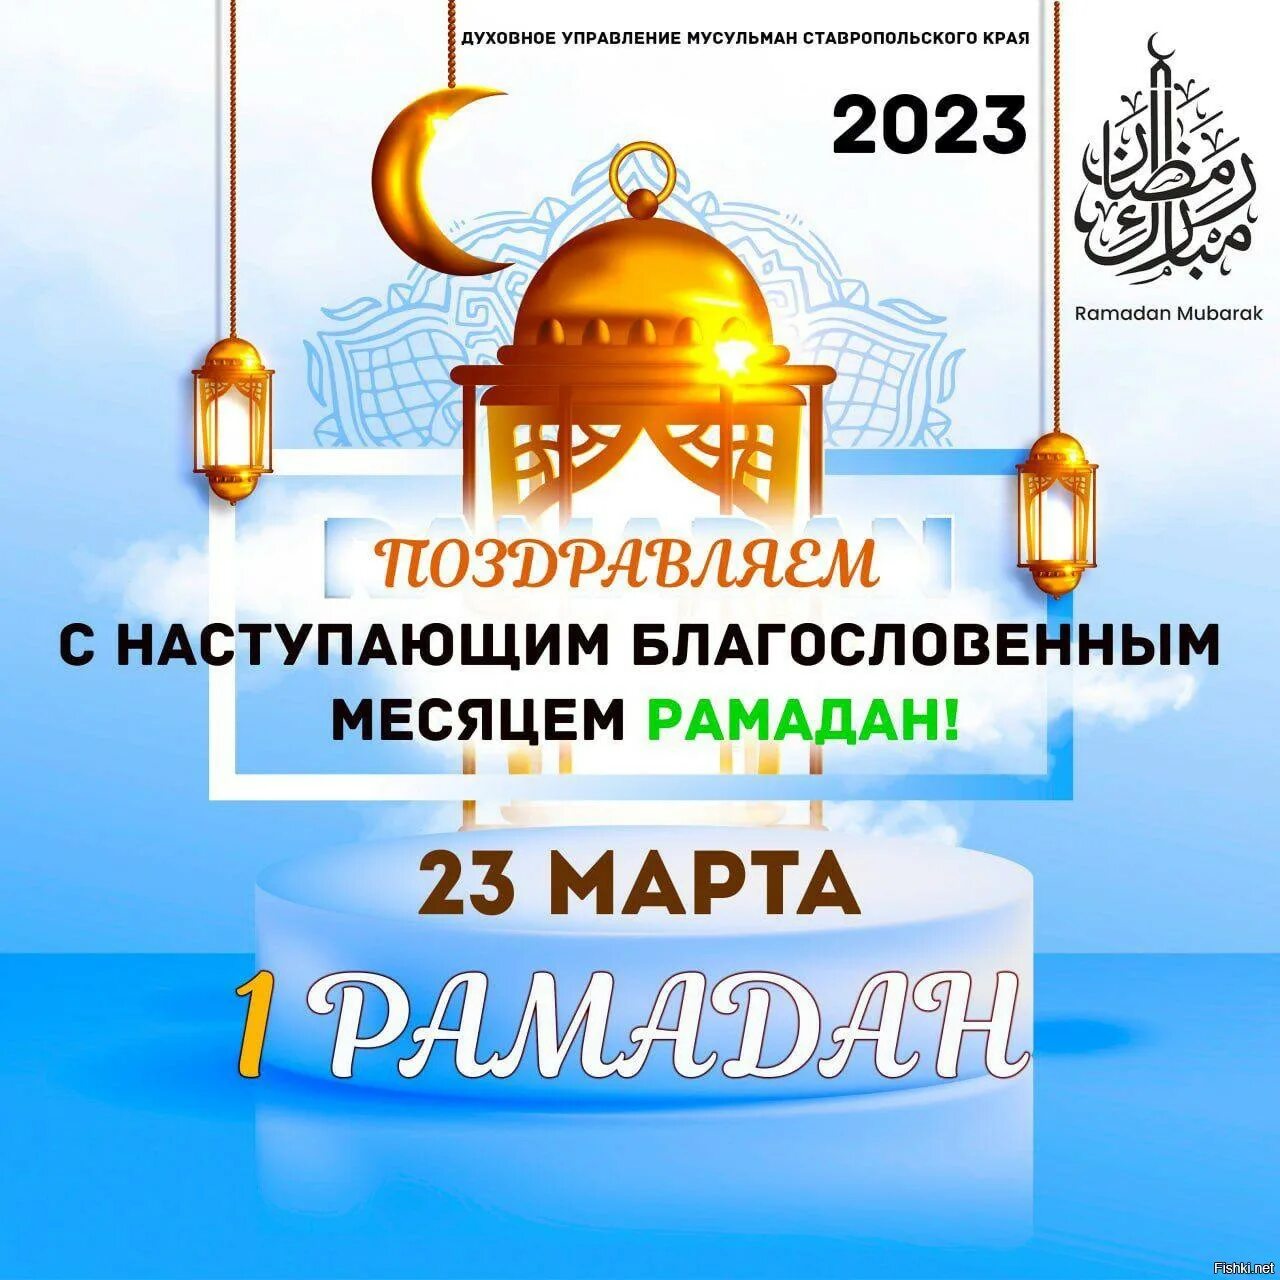 Открытки с месяцем рамадан на татарском. Поздравление смрамаданом. С началом ярамазана. С нпчалом рамвданв. С началомромадана.